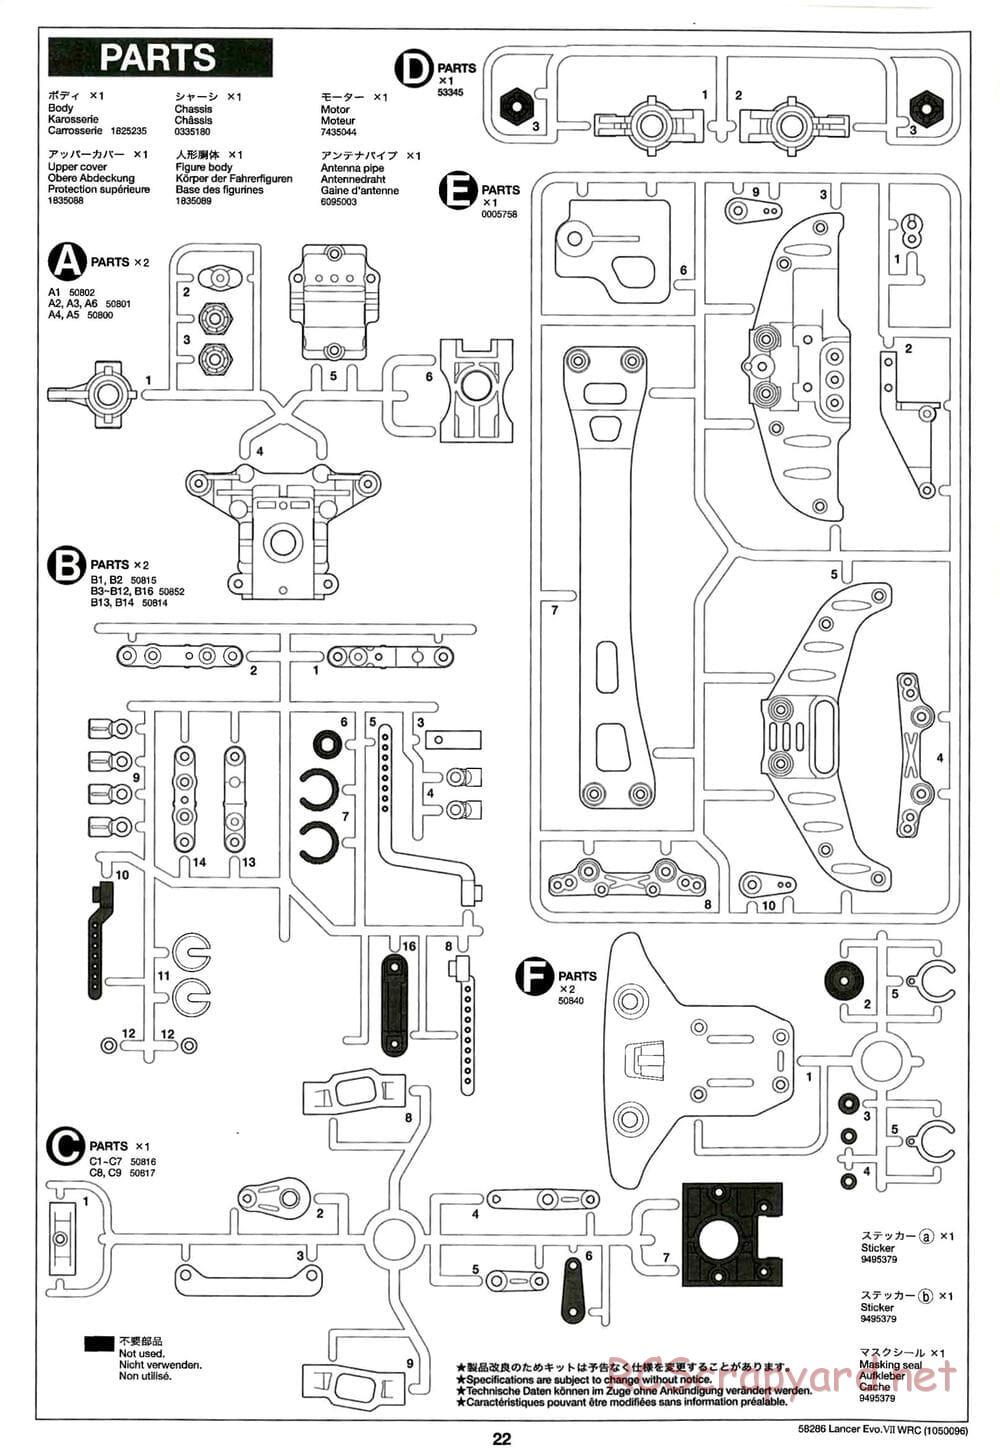 Tamiya - Mitsubishi Lancer Evolution VII WRC - TB-01 Chassis - Manual - Page 22